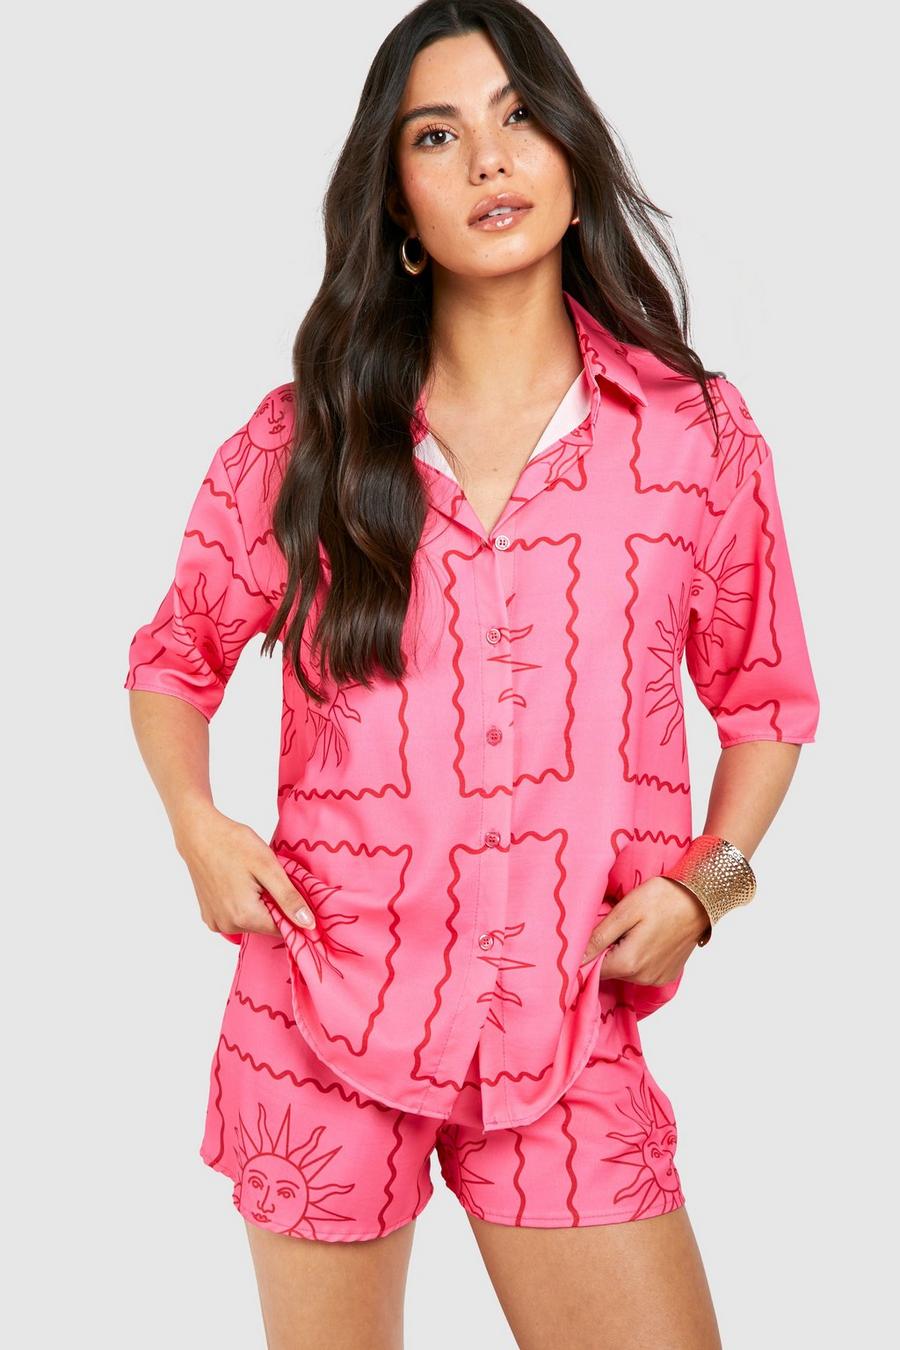 Lockeres Hemd & Shorts mit Sonnen-Print, Hot pink image number 1